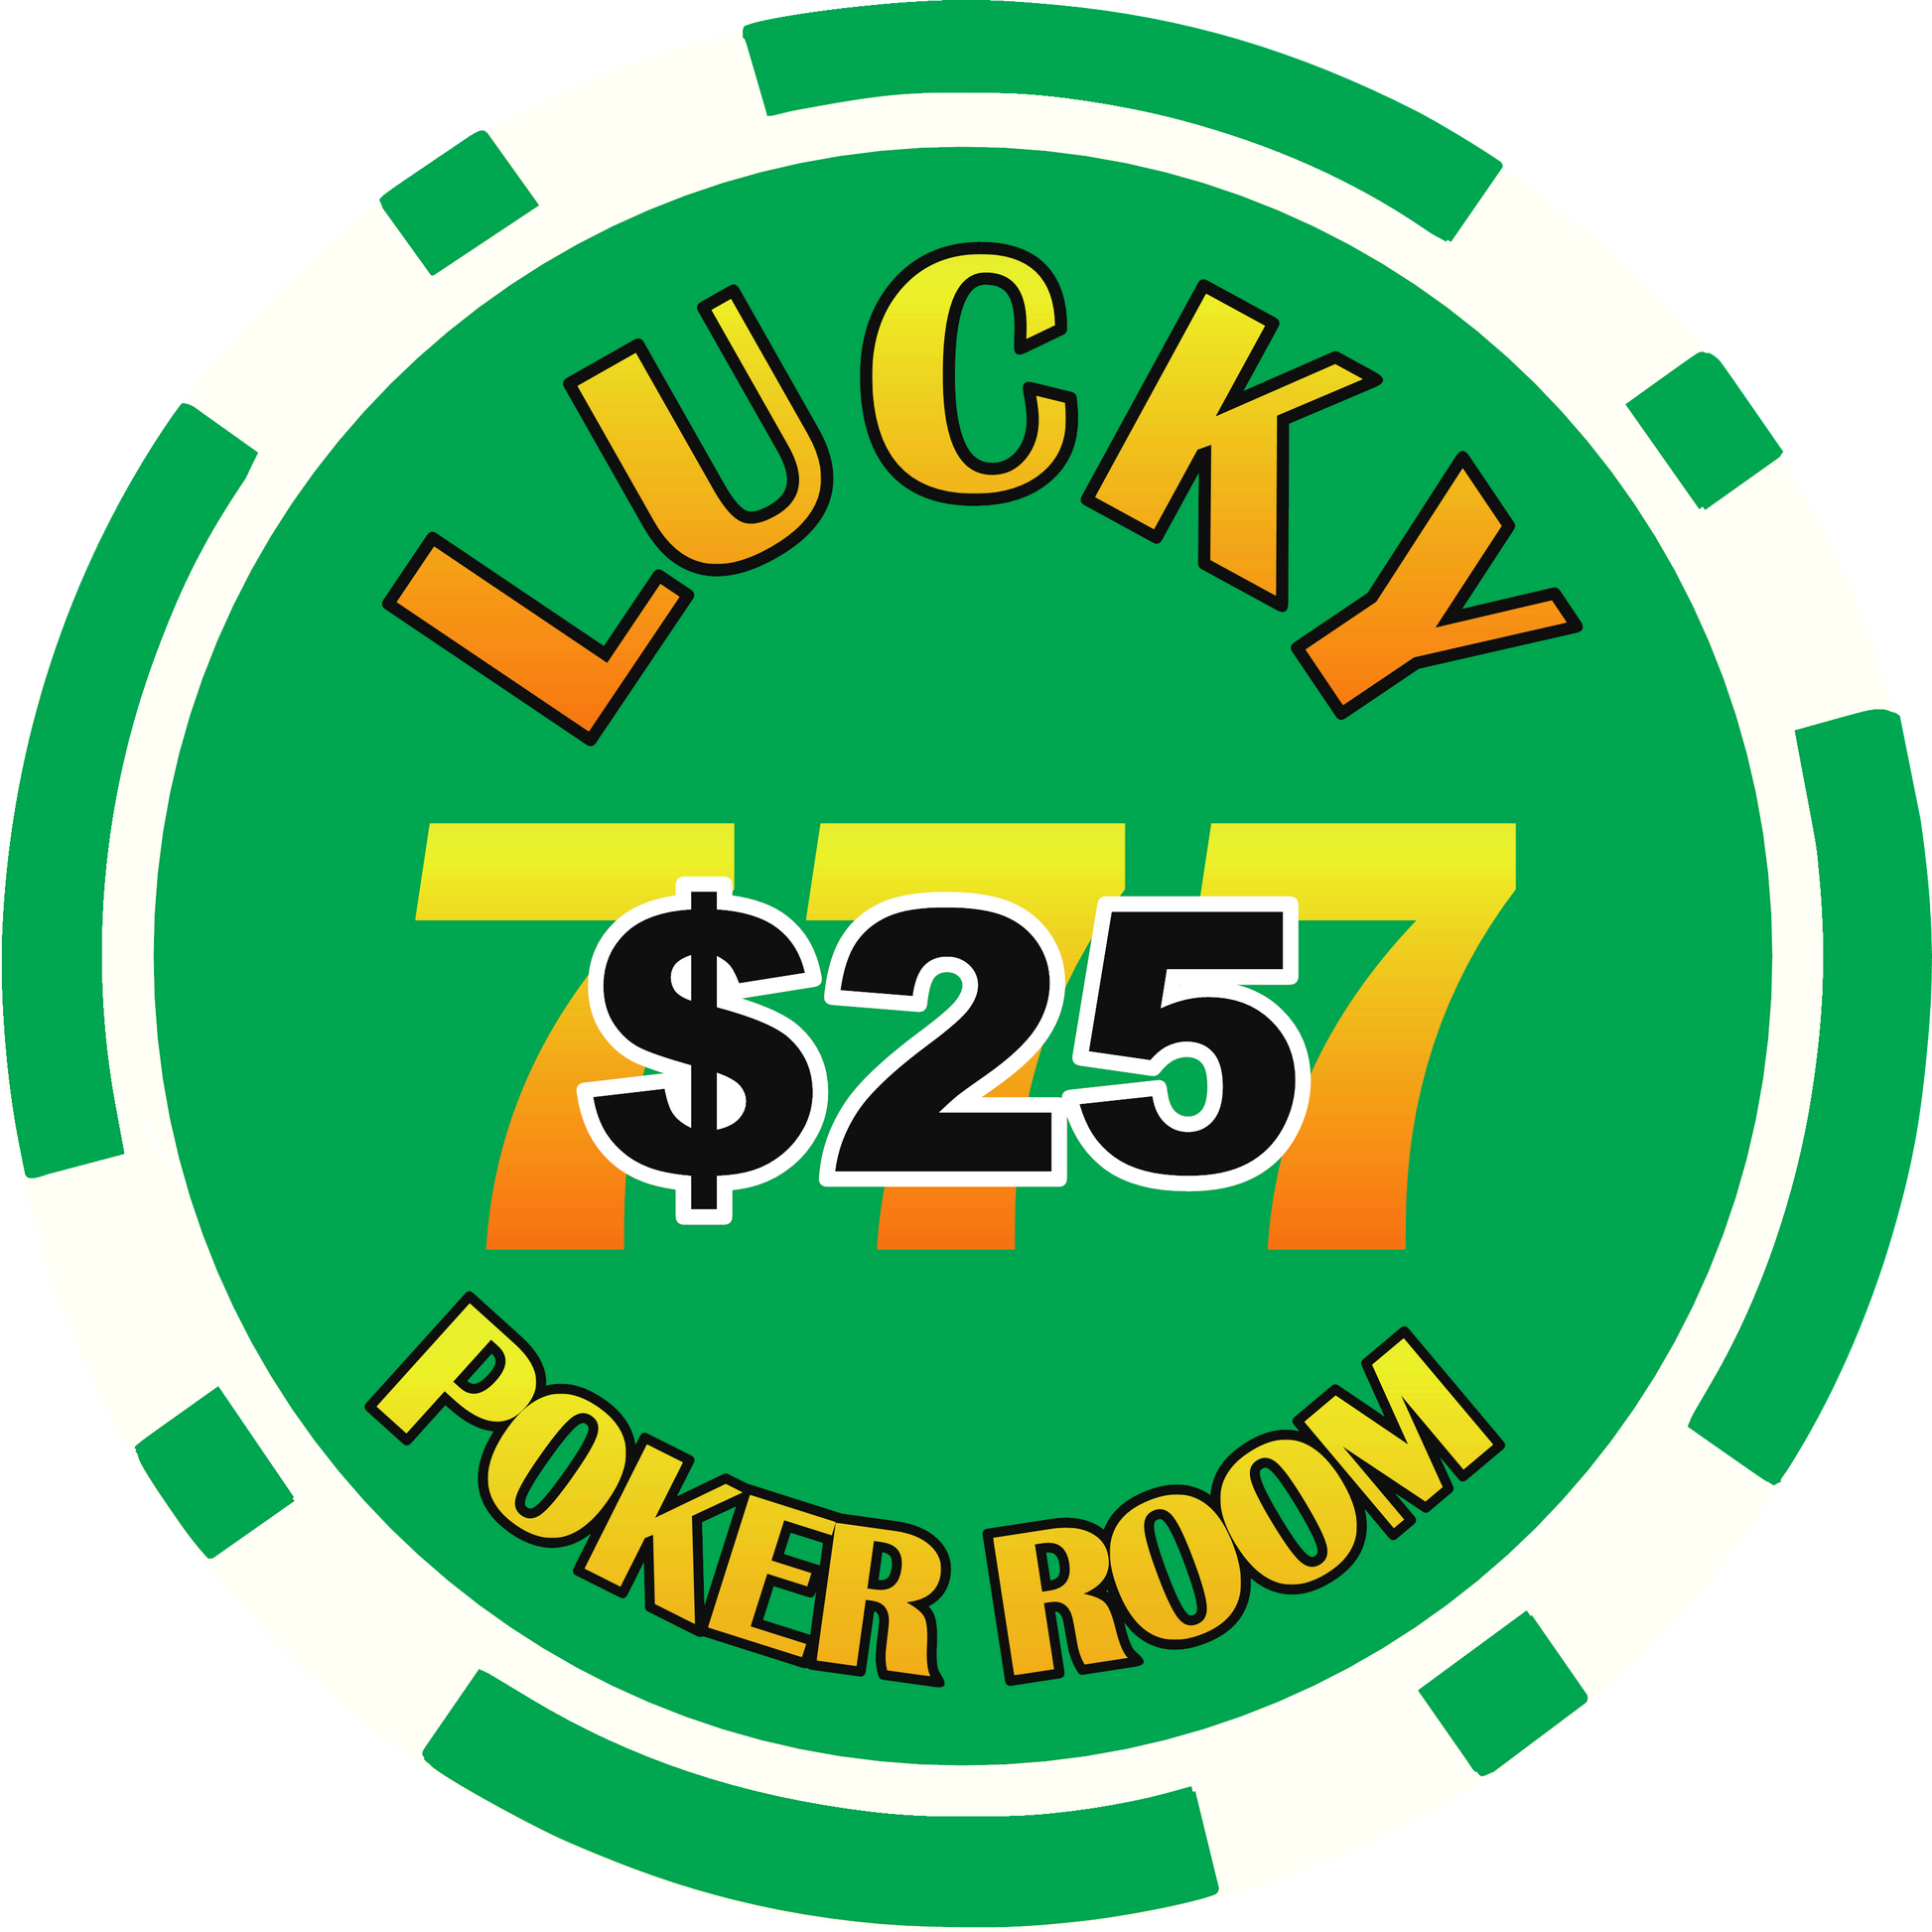 Lucky Poker Room Green $25 chip